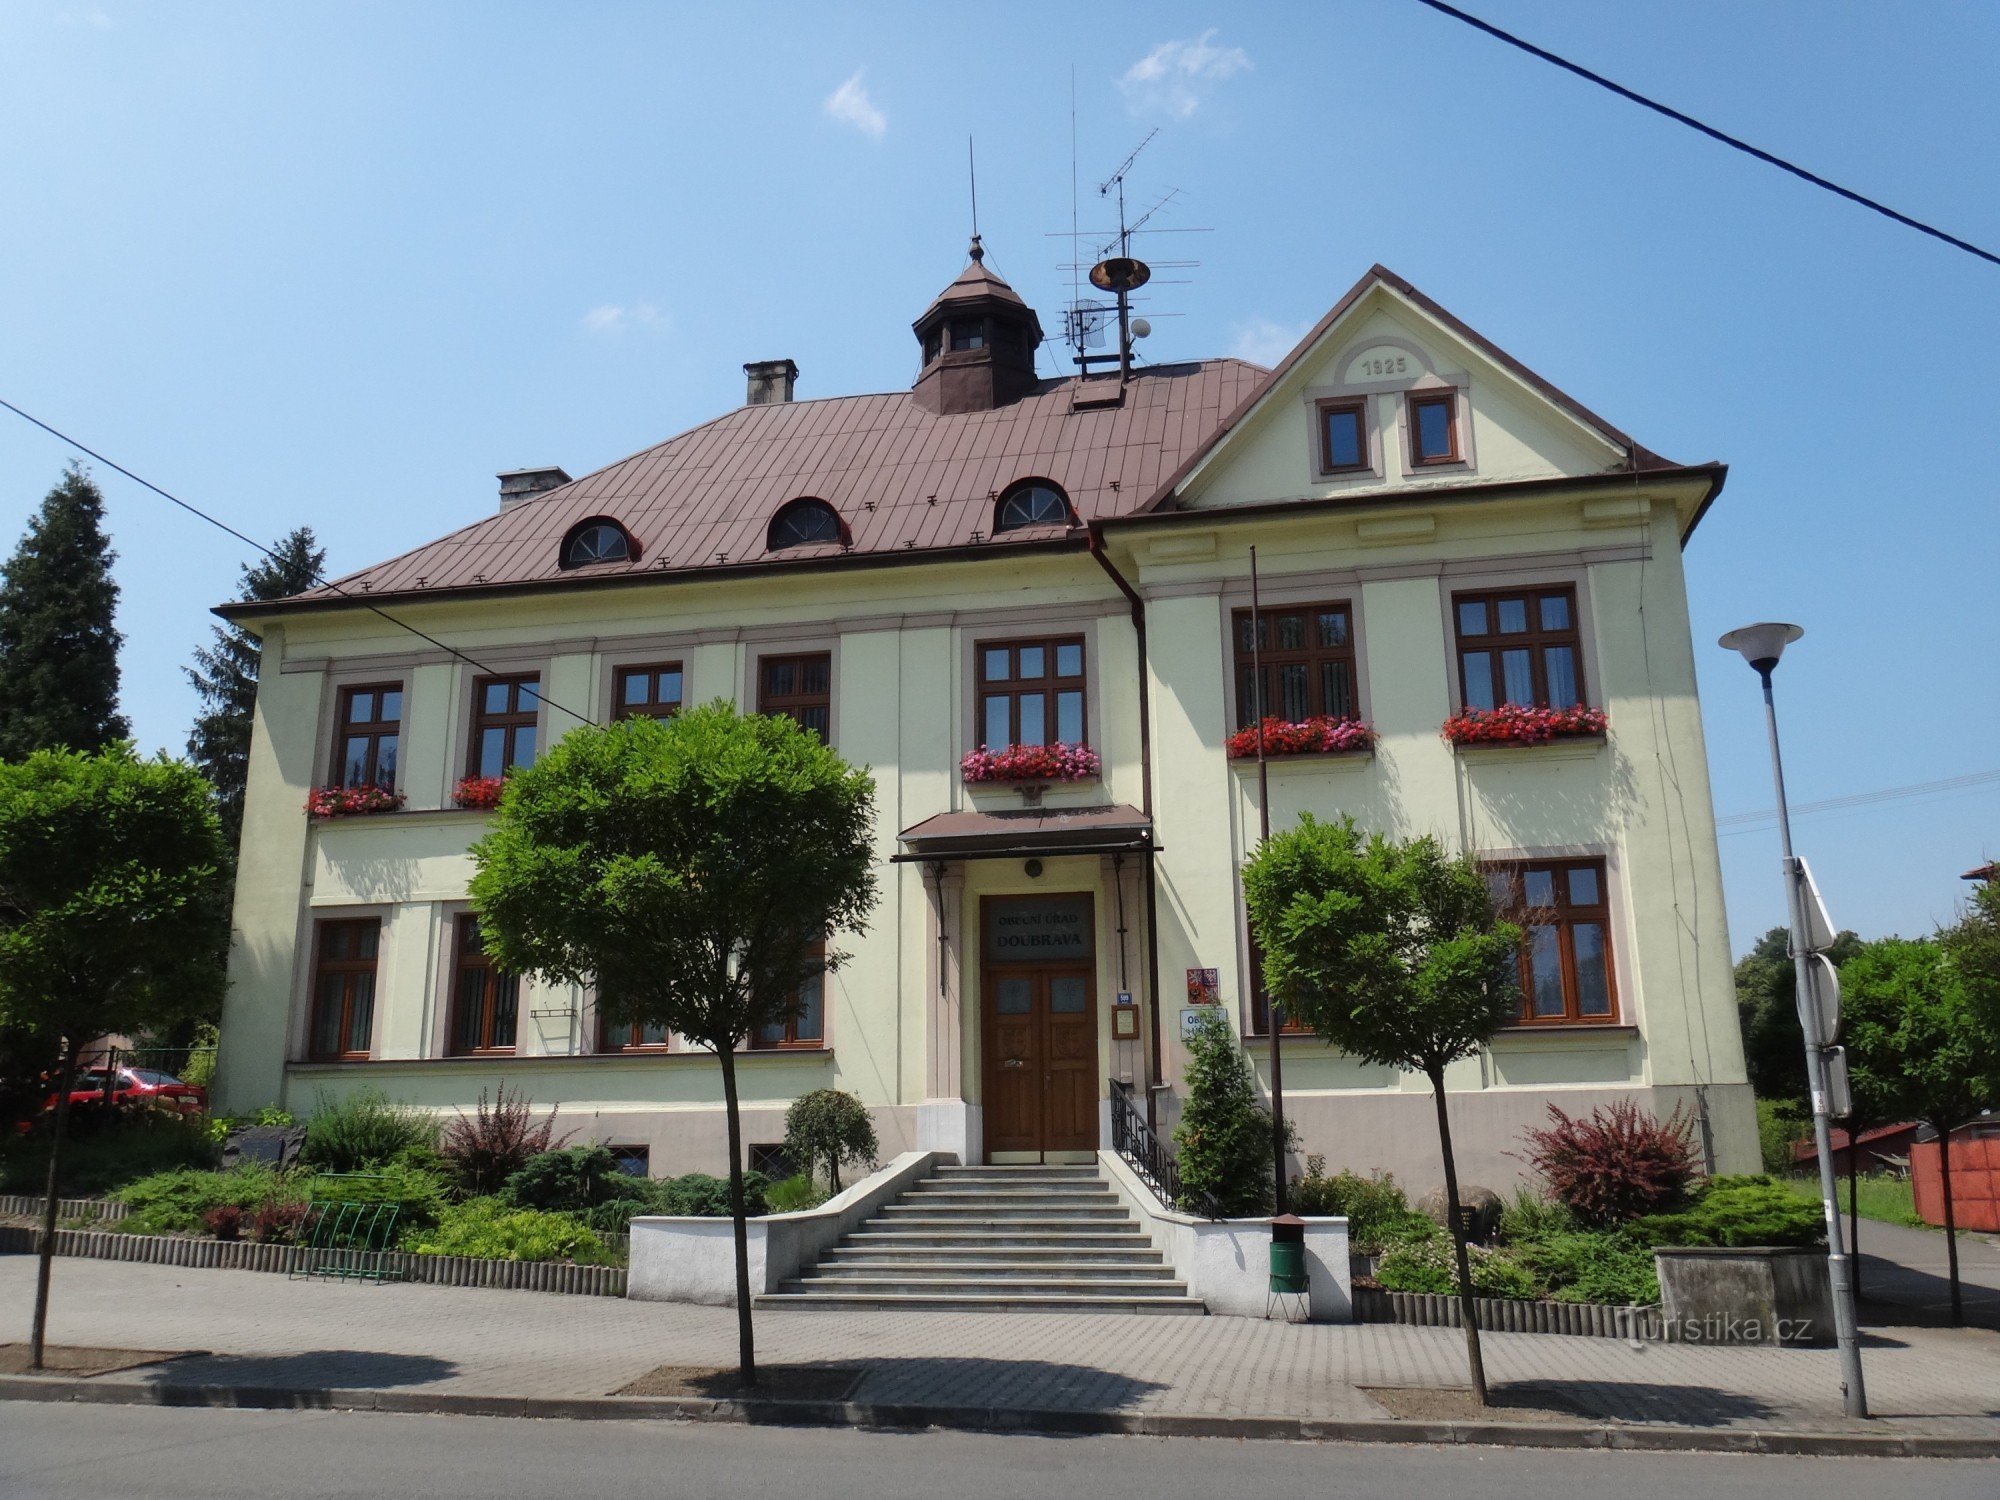 Casa Nacional Doubrava